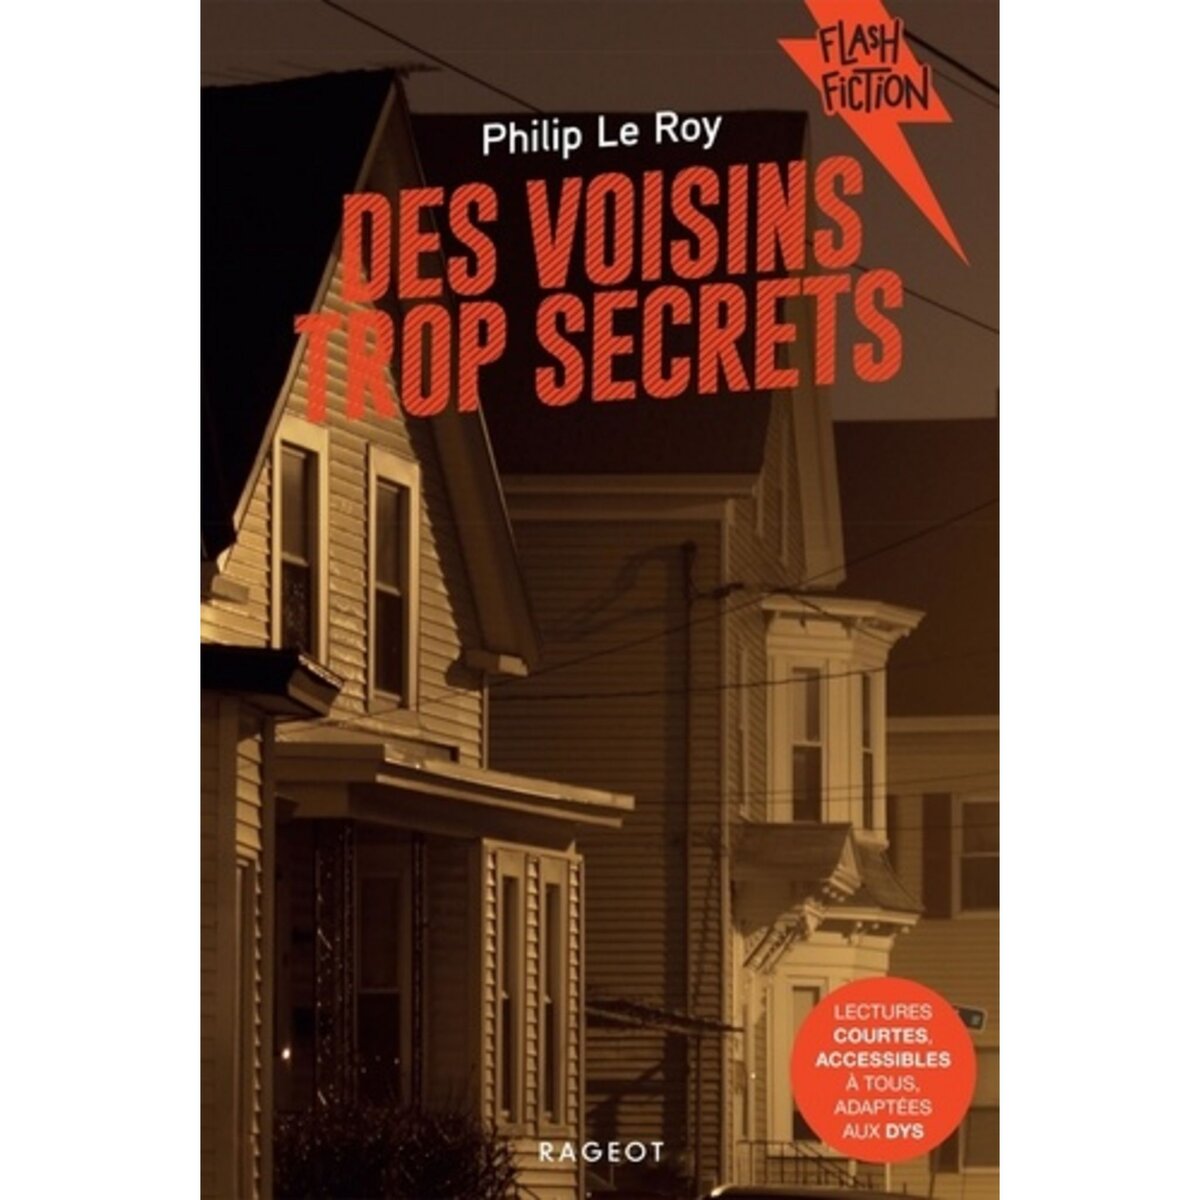  DES VOISINS TROP SECRETS [ADAPTE AUX DYS], Le Roy Philip